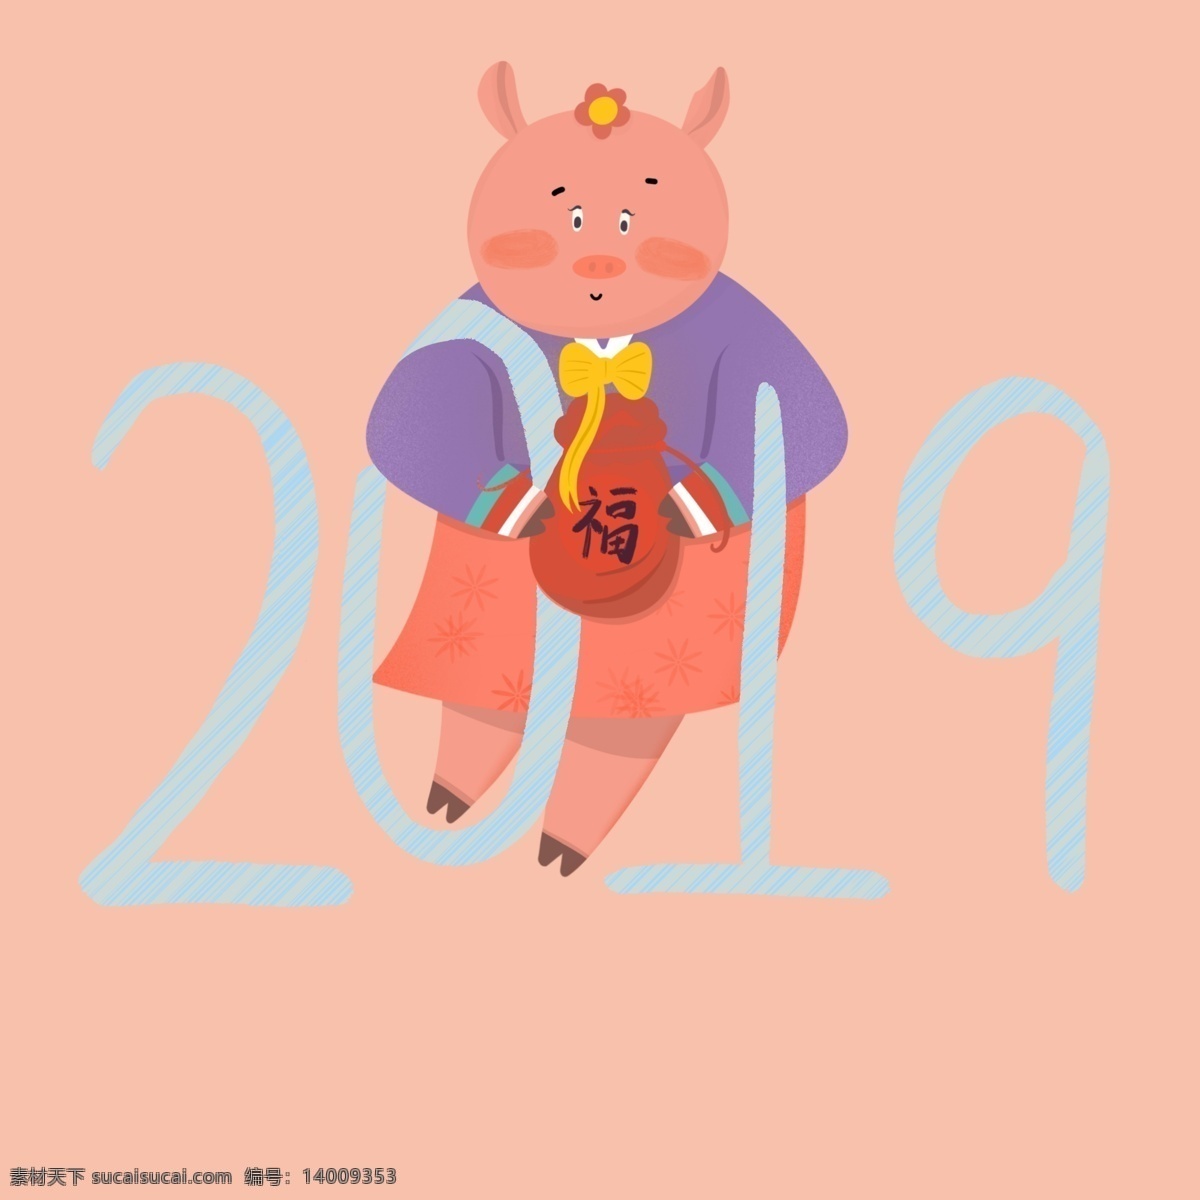 新年 紫菜 笔 风格 简洁 2019 简练 甘草 猪 福袋 字体